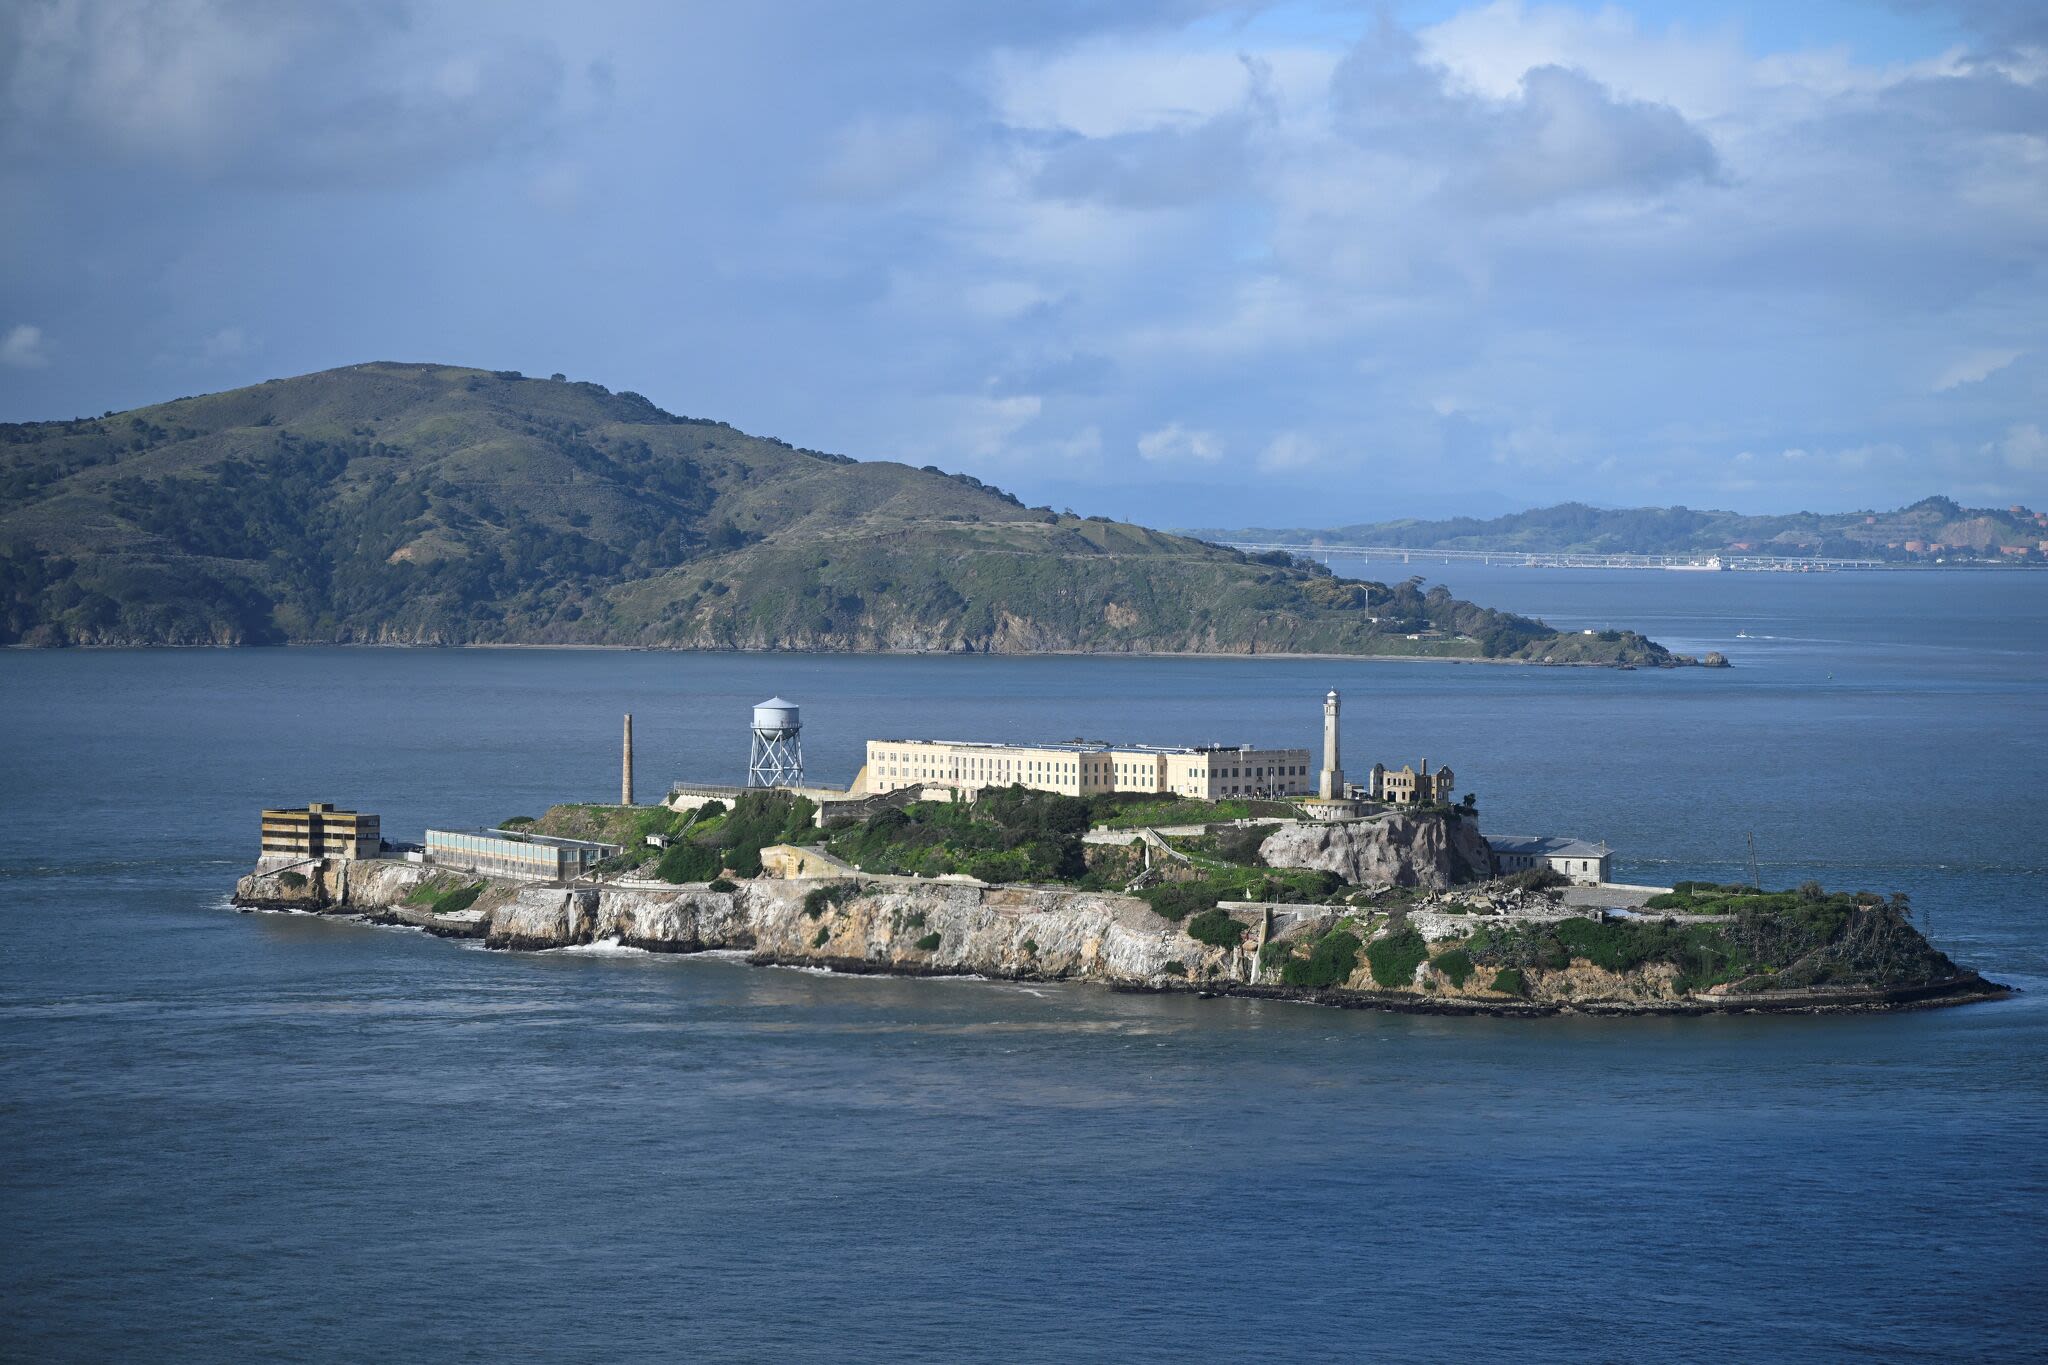 $48.6 million Alcatraz construction to create 'periodic visitor impacts'